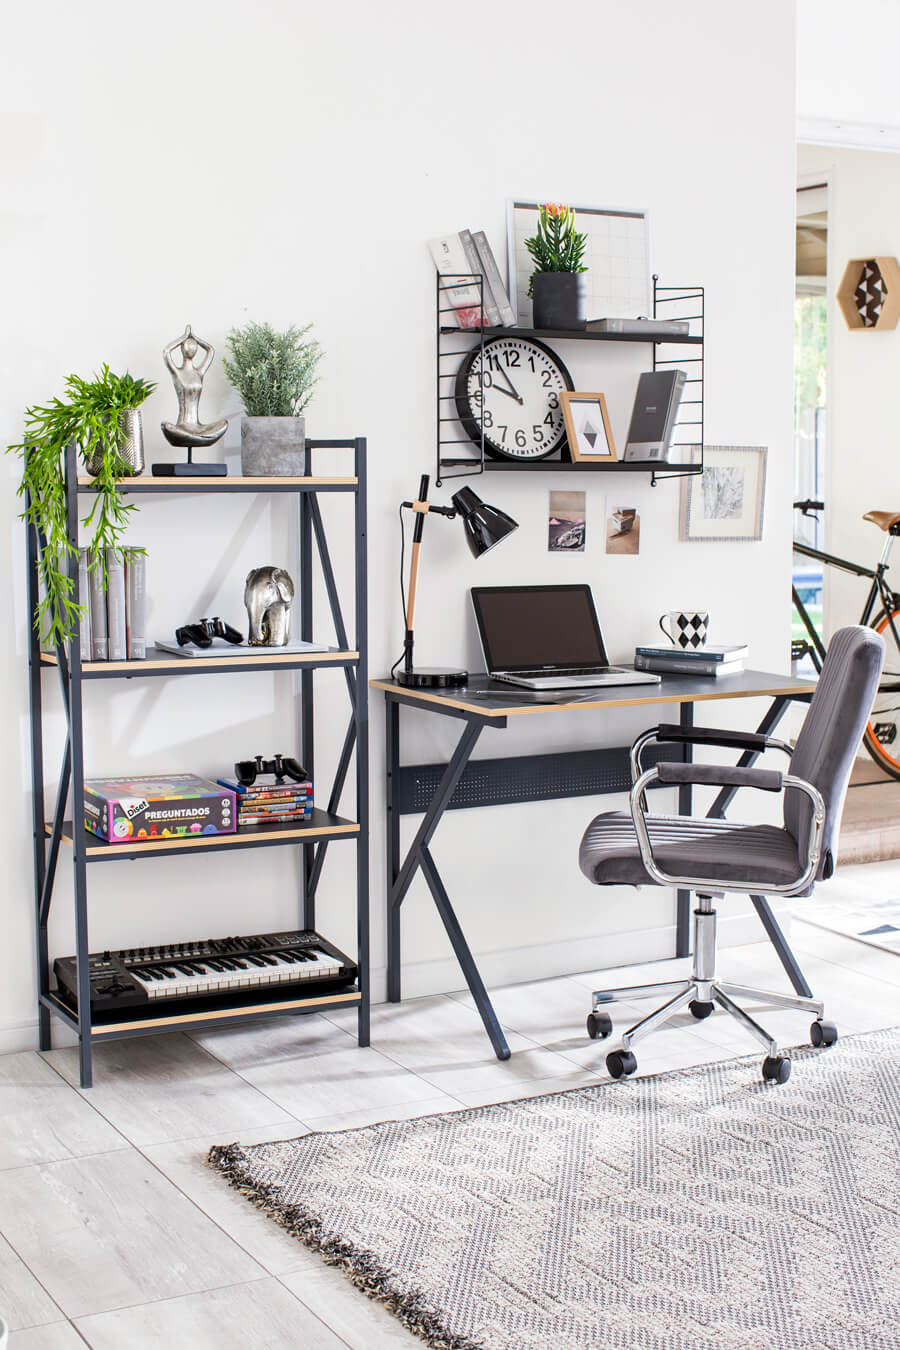 Zona de trabajo estilo industrial con un escritorio negro combinado con un estante del mismo estilo. Sobre el escritorio hay una repisa flotante negra y frente al escritorio hay una silla de oficina negra sobre una alfombra gris.